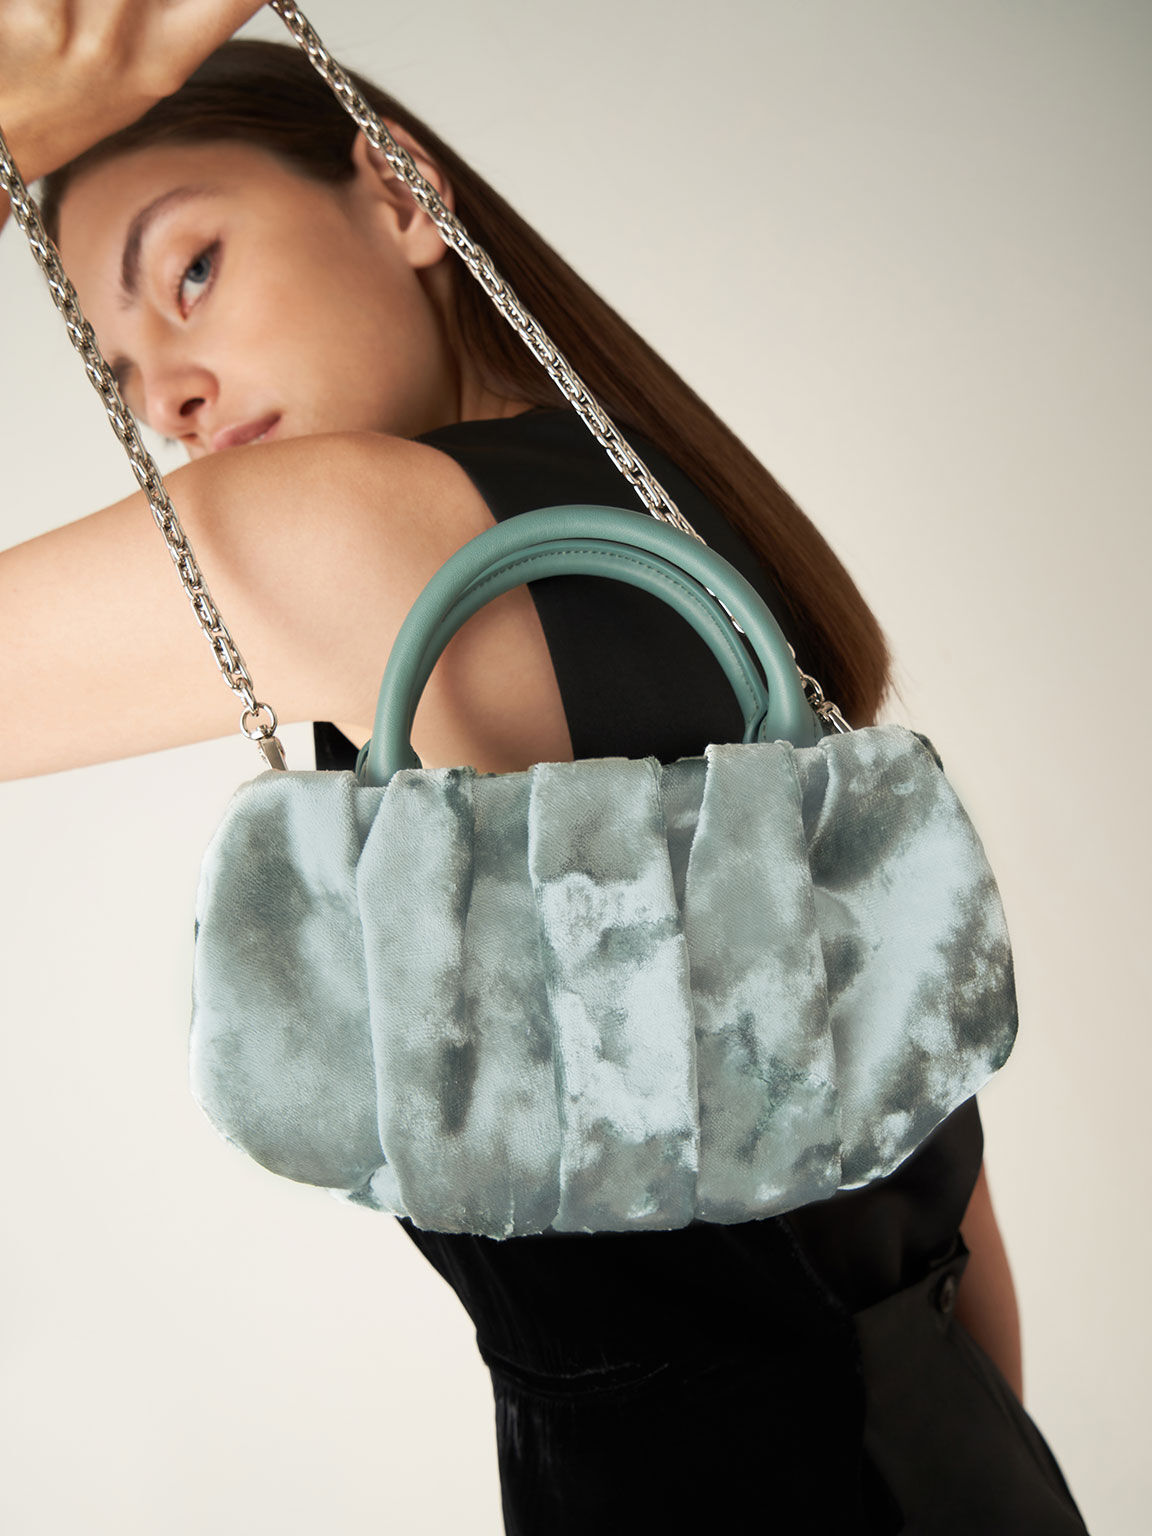 Holiday 2021 Collection: Claudette Ruched Velvet Top Handle Bag, Sage Green, hi-res